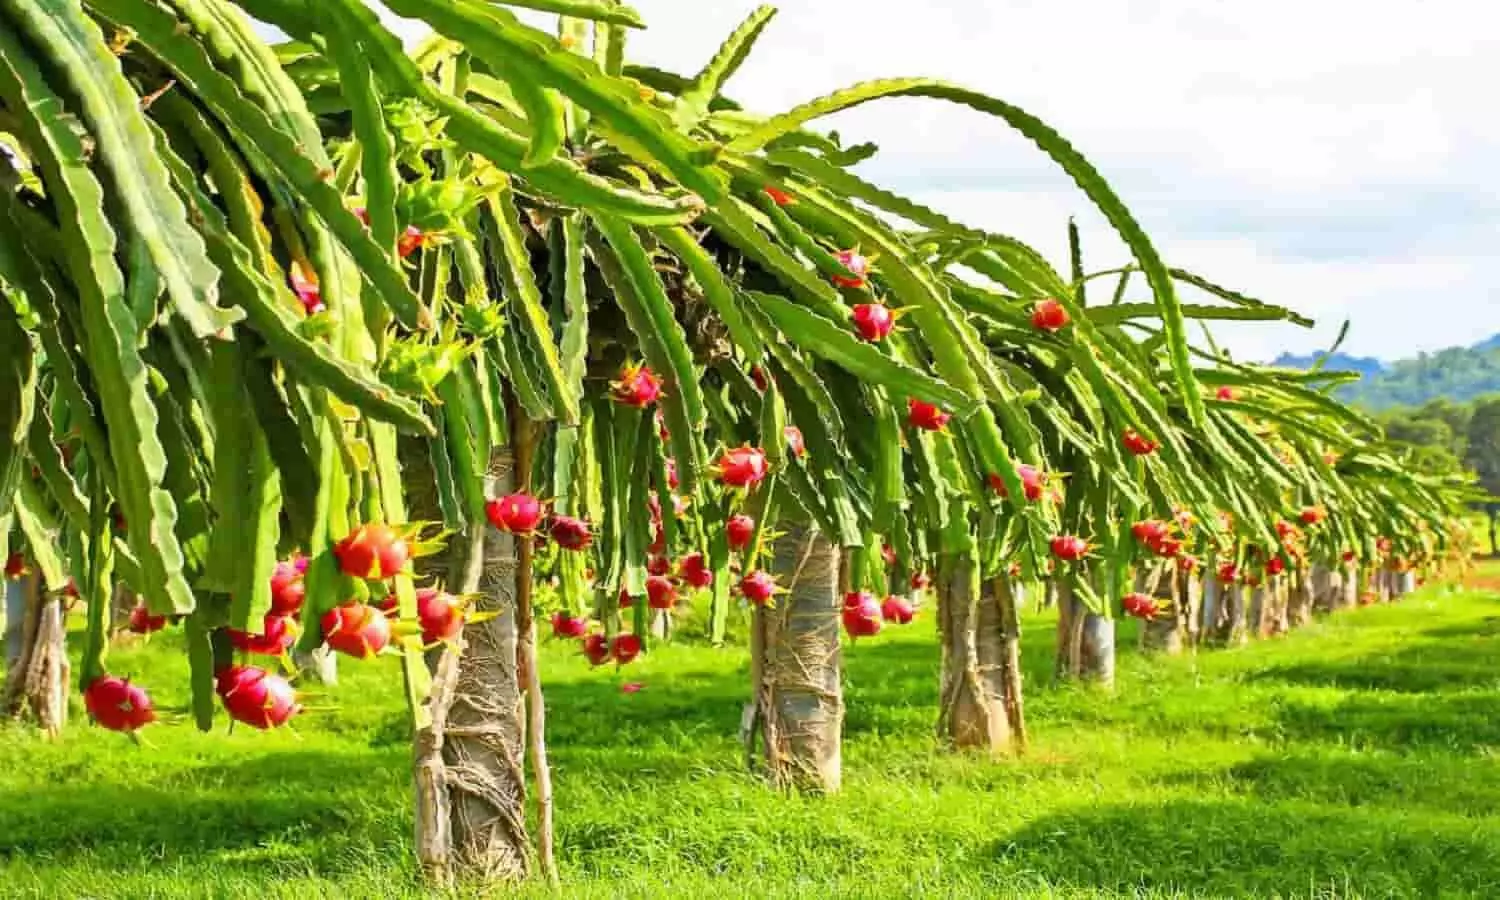 Dragon Fruit Farming: ड्रैगन फ्रूट की खेती कर बनें लखपति, सरकार दे रही है 1,20,000 रूपए प्रति एकड़ | Dragon Fruit Farming: Become a millionaire by cultivating dragon fruit, the government is